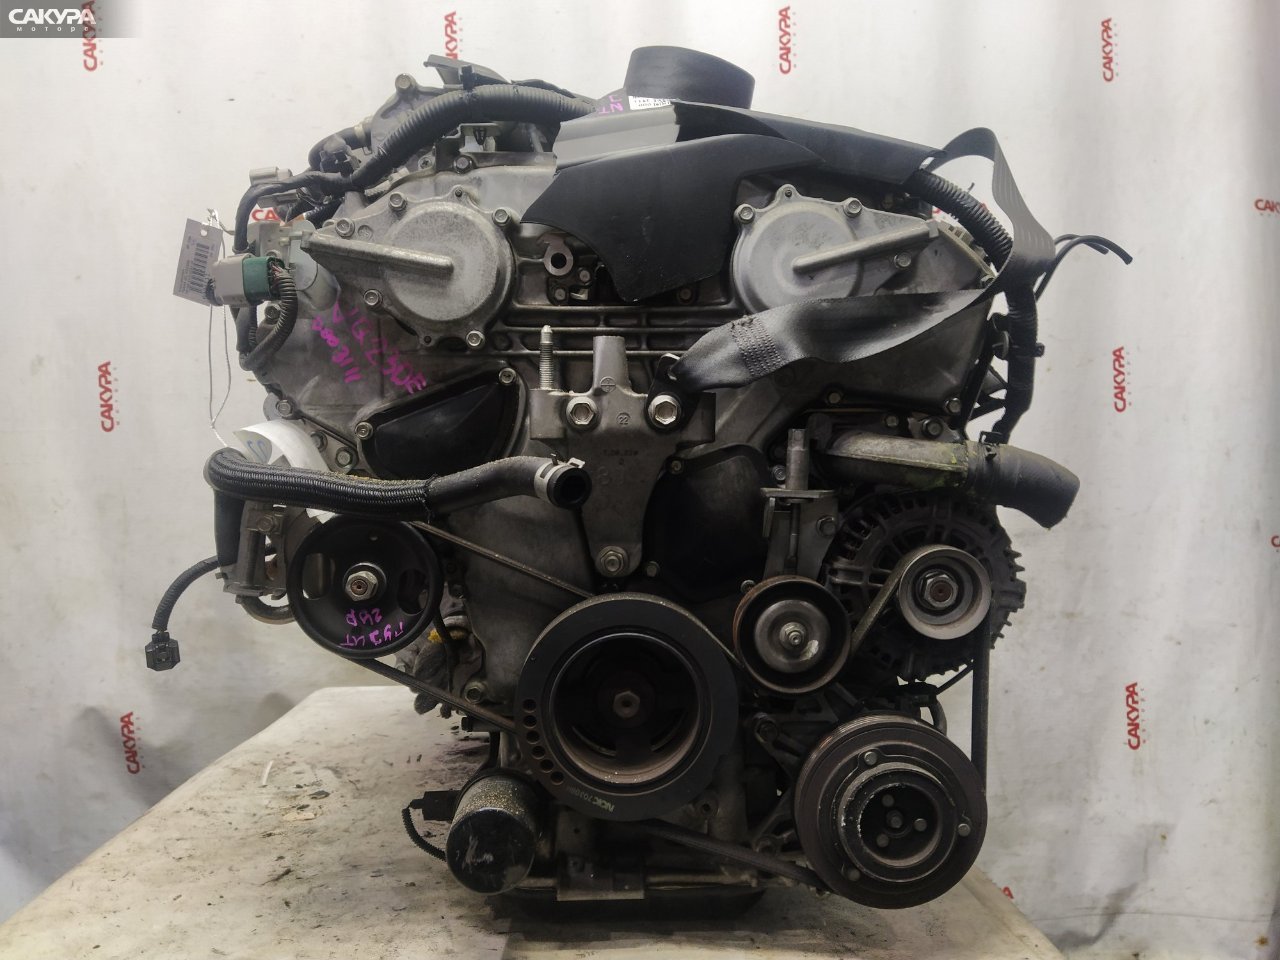 Двигатель Nissan Teana J31 VQ23DE: купить в Сакура Красноярск.